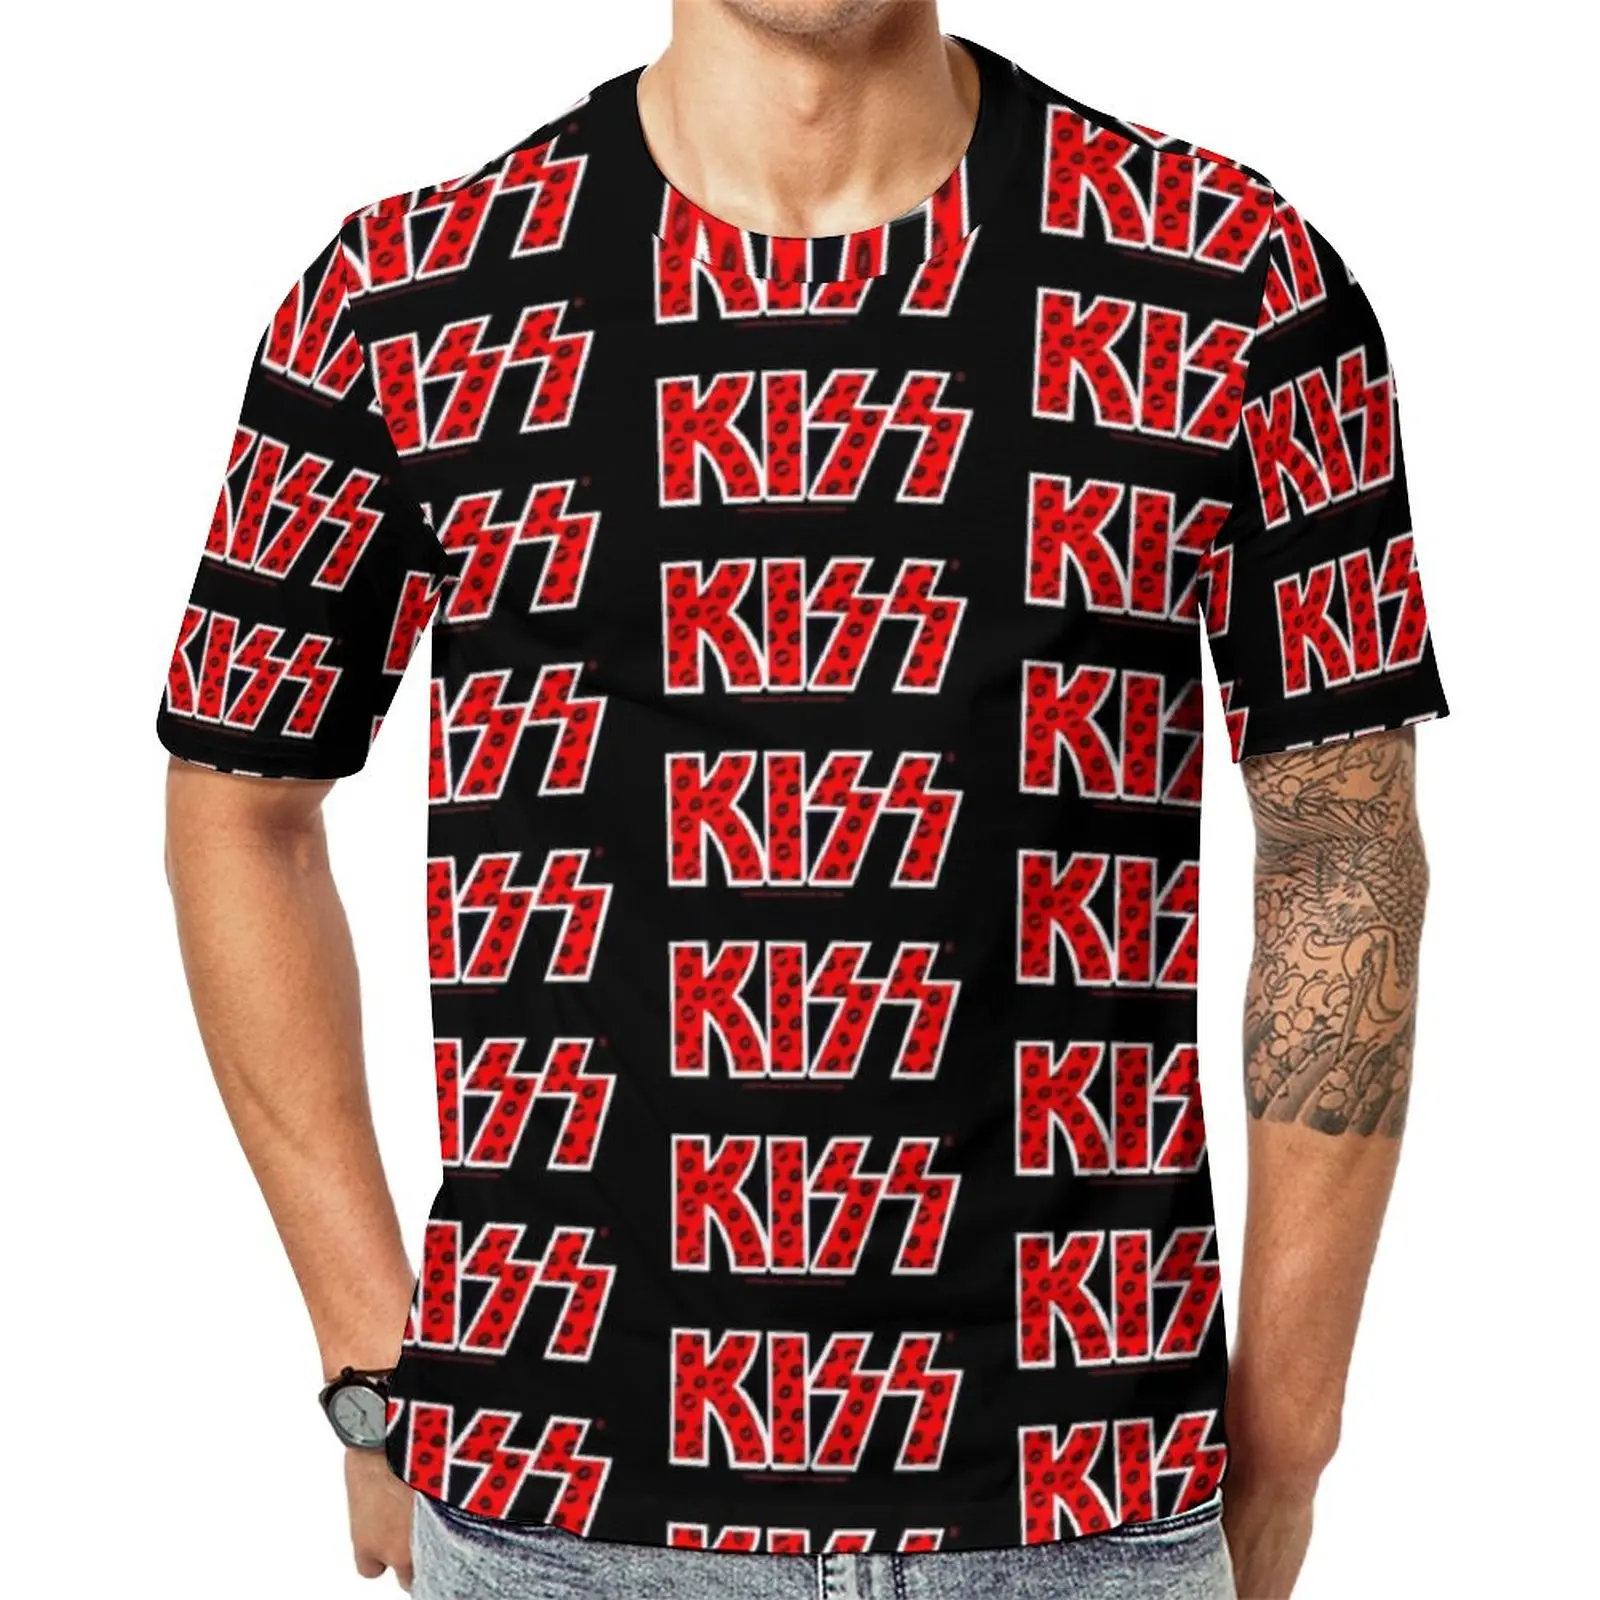 

Футболка Kiss Band мужская с логотипом черных губ, смешная летняя стандартная футболка большого размера с коротким рукавом